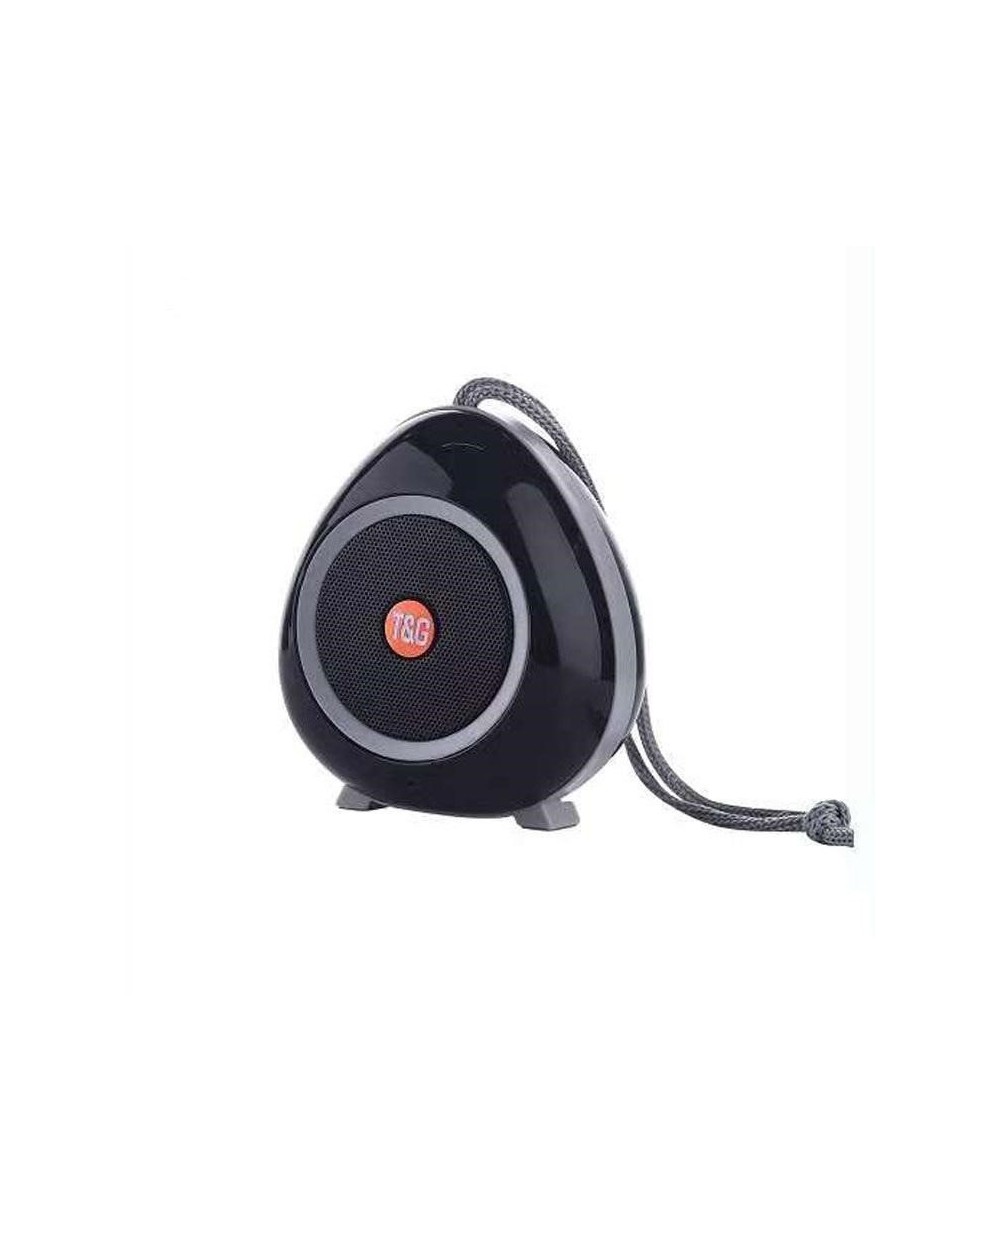 Ασύρματο Φορητό Ηχείο Bluetooth Αδιάβροχο T&G TG514 με μικρόφωνο (γκρι)